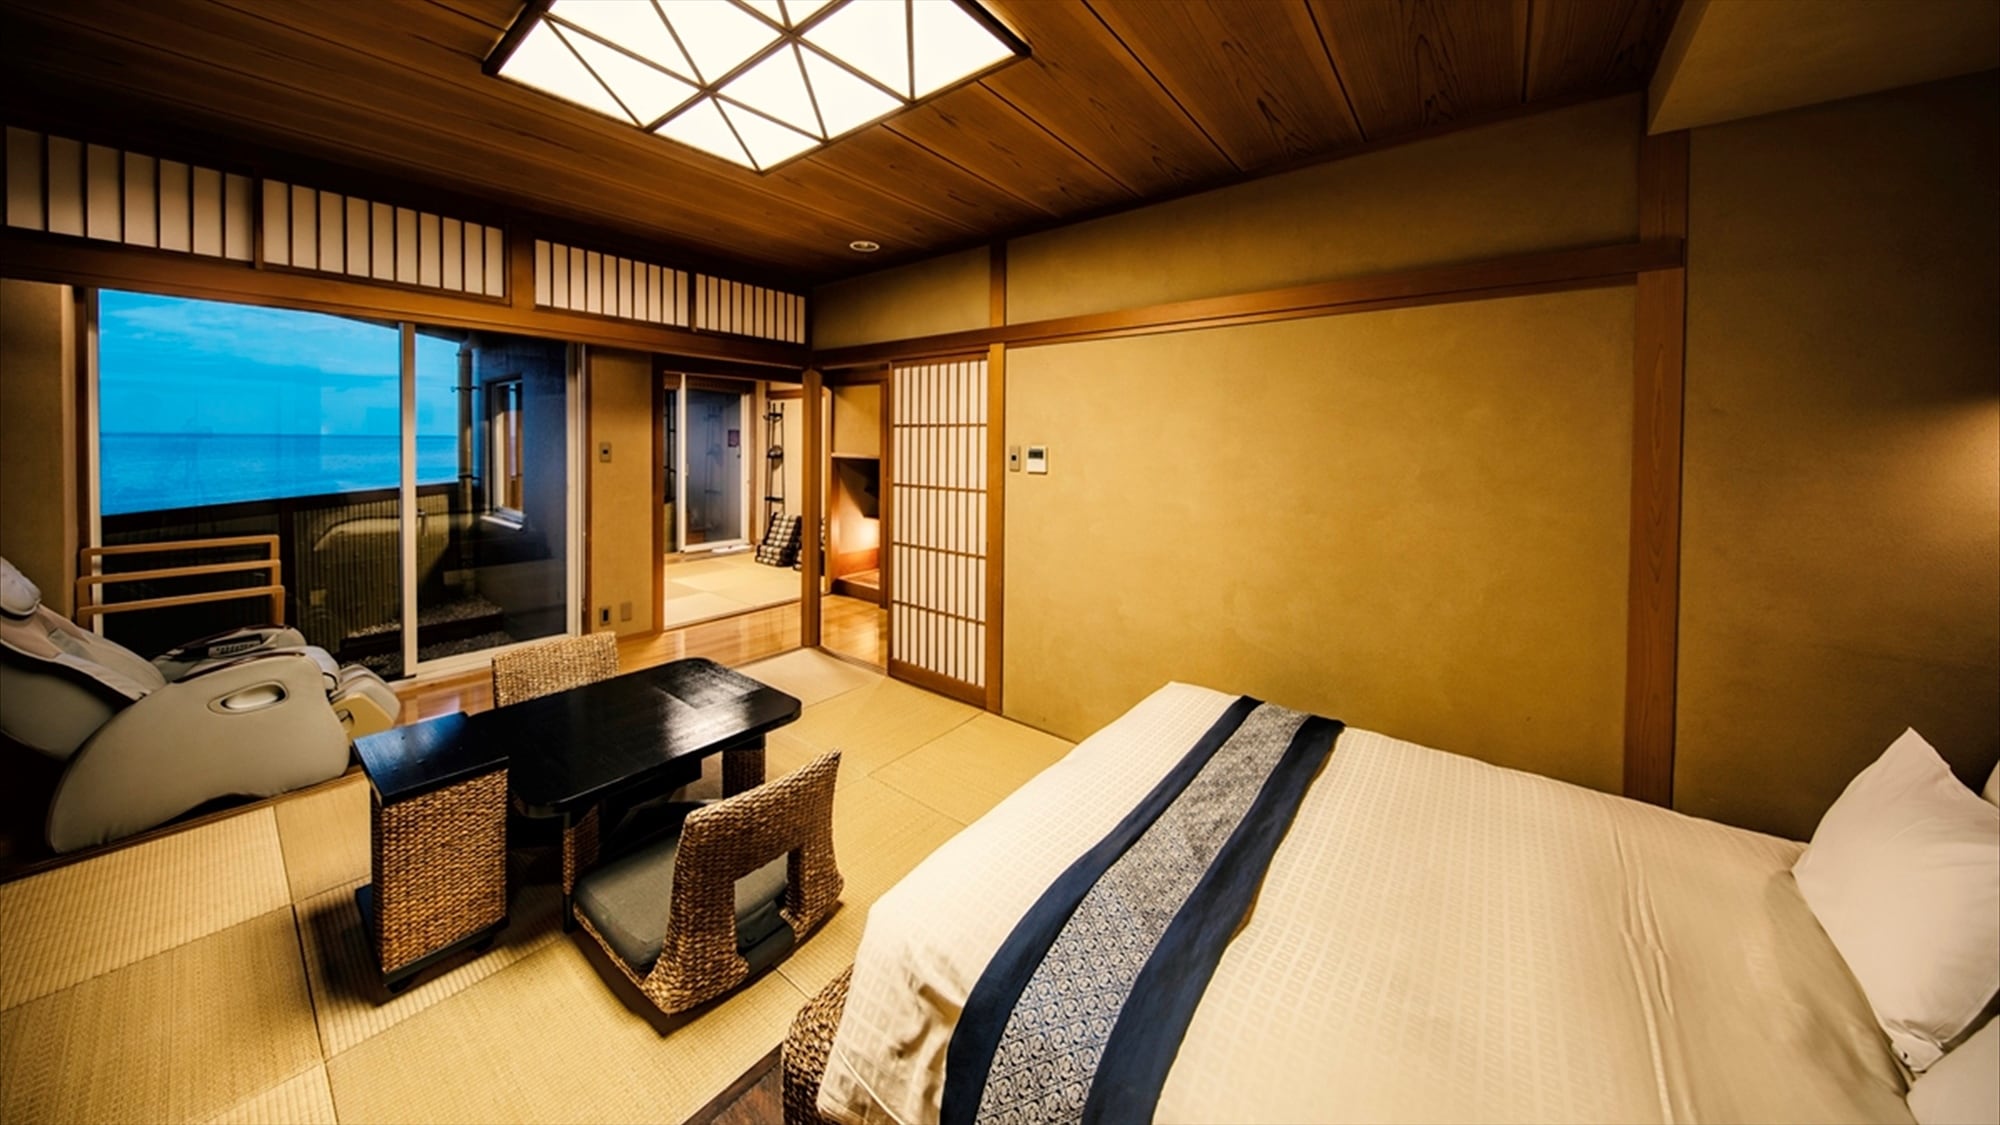 [ห้องเตียงใหญ่แบบญี่ปุ่นและแบบตะวันตก 2 ห้อง] เตียงคู่ขนาดกว้างขวางแบบห้องแบบญี่ปุ่นและตะวันตกแบบ 2 ห้อง